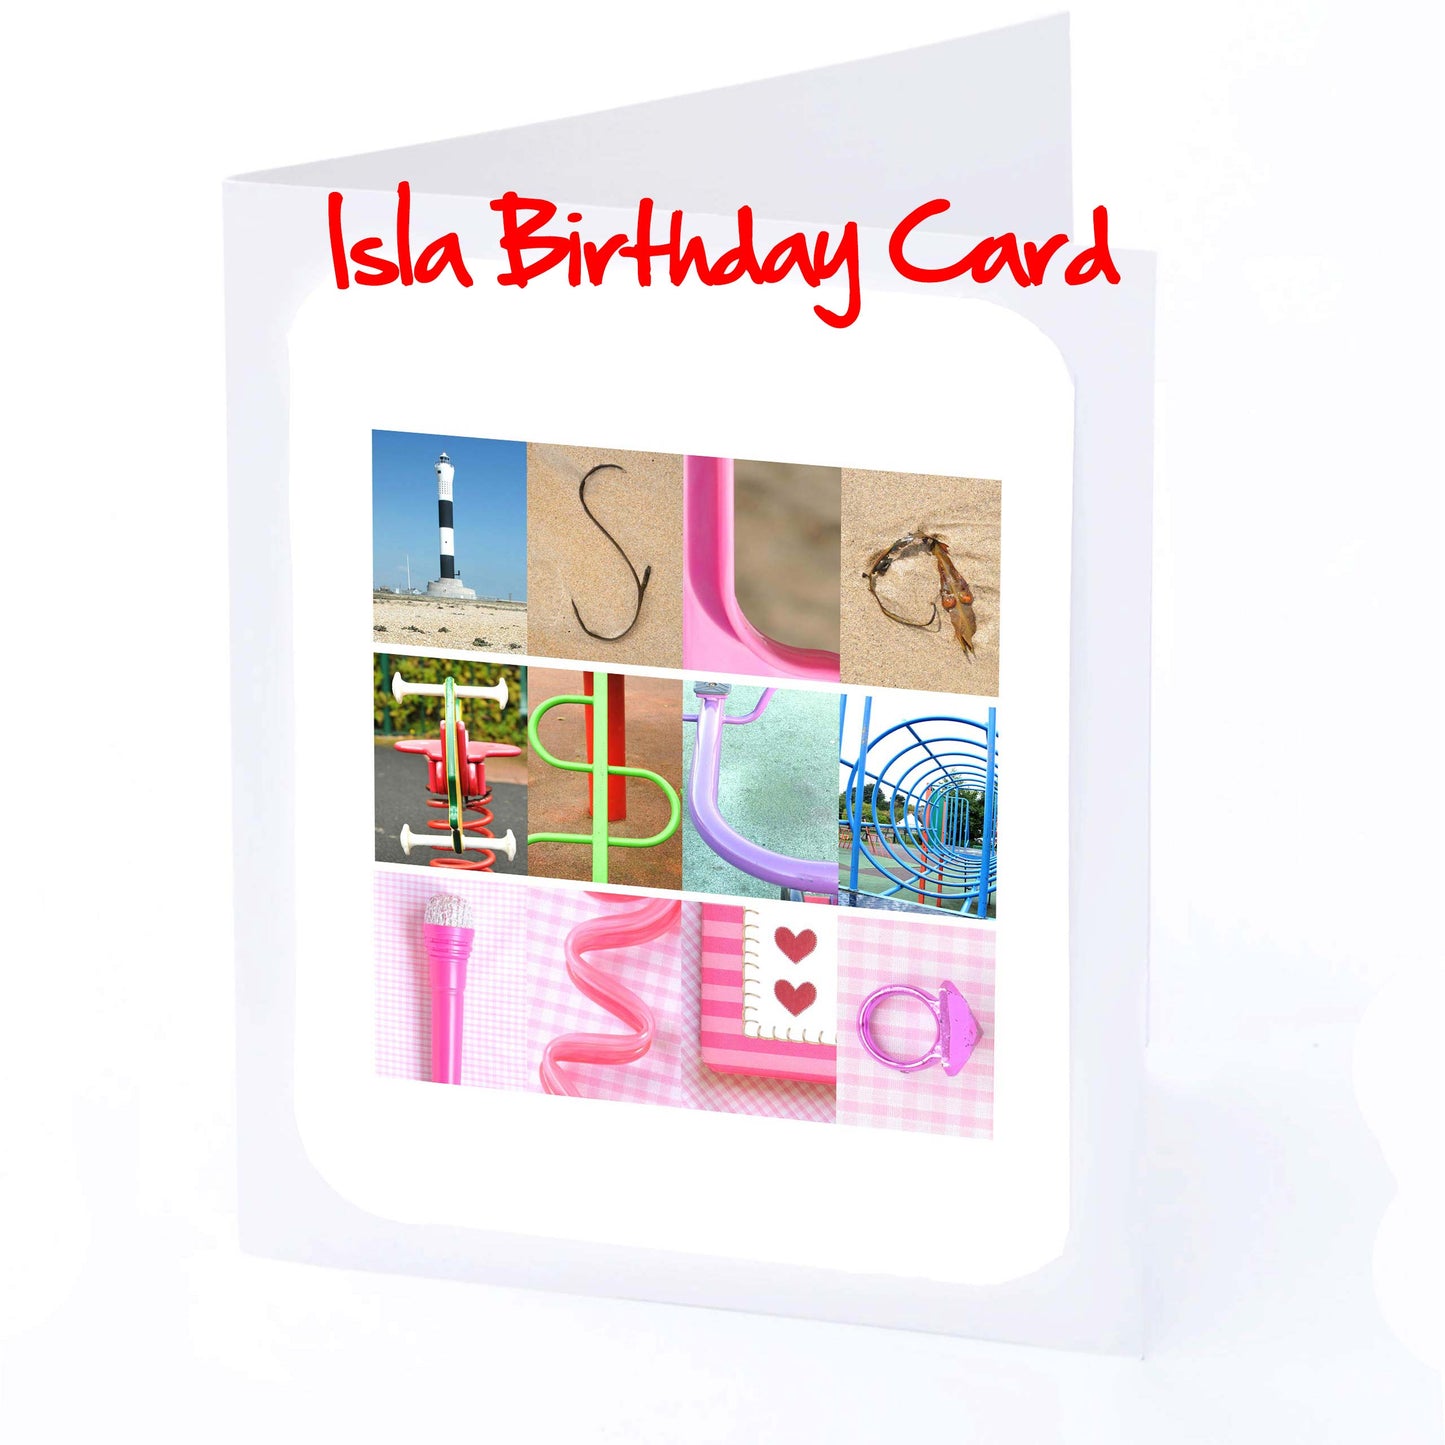 Imo - Ivy Girls Personalised Card - Imogen, India, Iris, Isabel, Isabella, Isabelle, Isla, Isobel, Issy, Ivy, Any name - Personalised Girls Cards